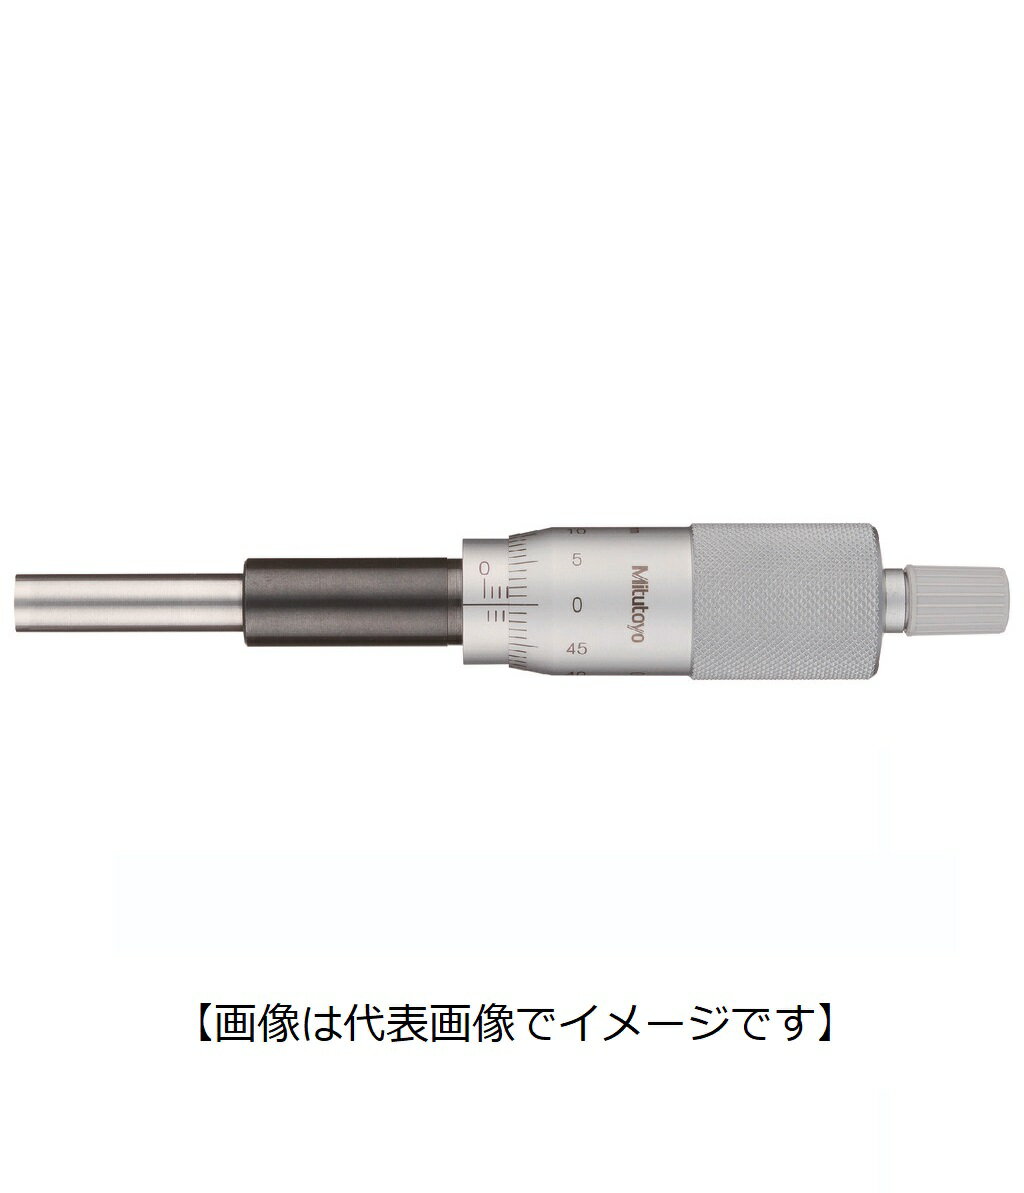 ミツトヨ 151-223 MHH2-25 アナログマイクロメーターヘッド ナット付ステム 先端平面 ラチェット付